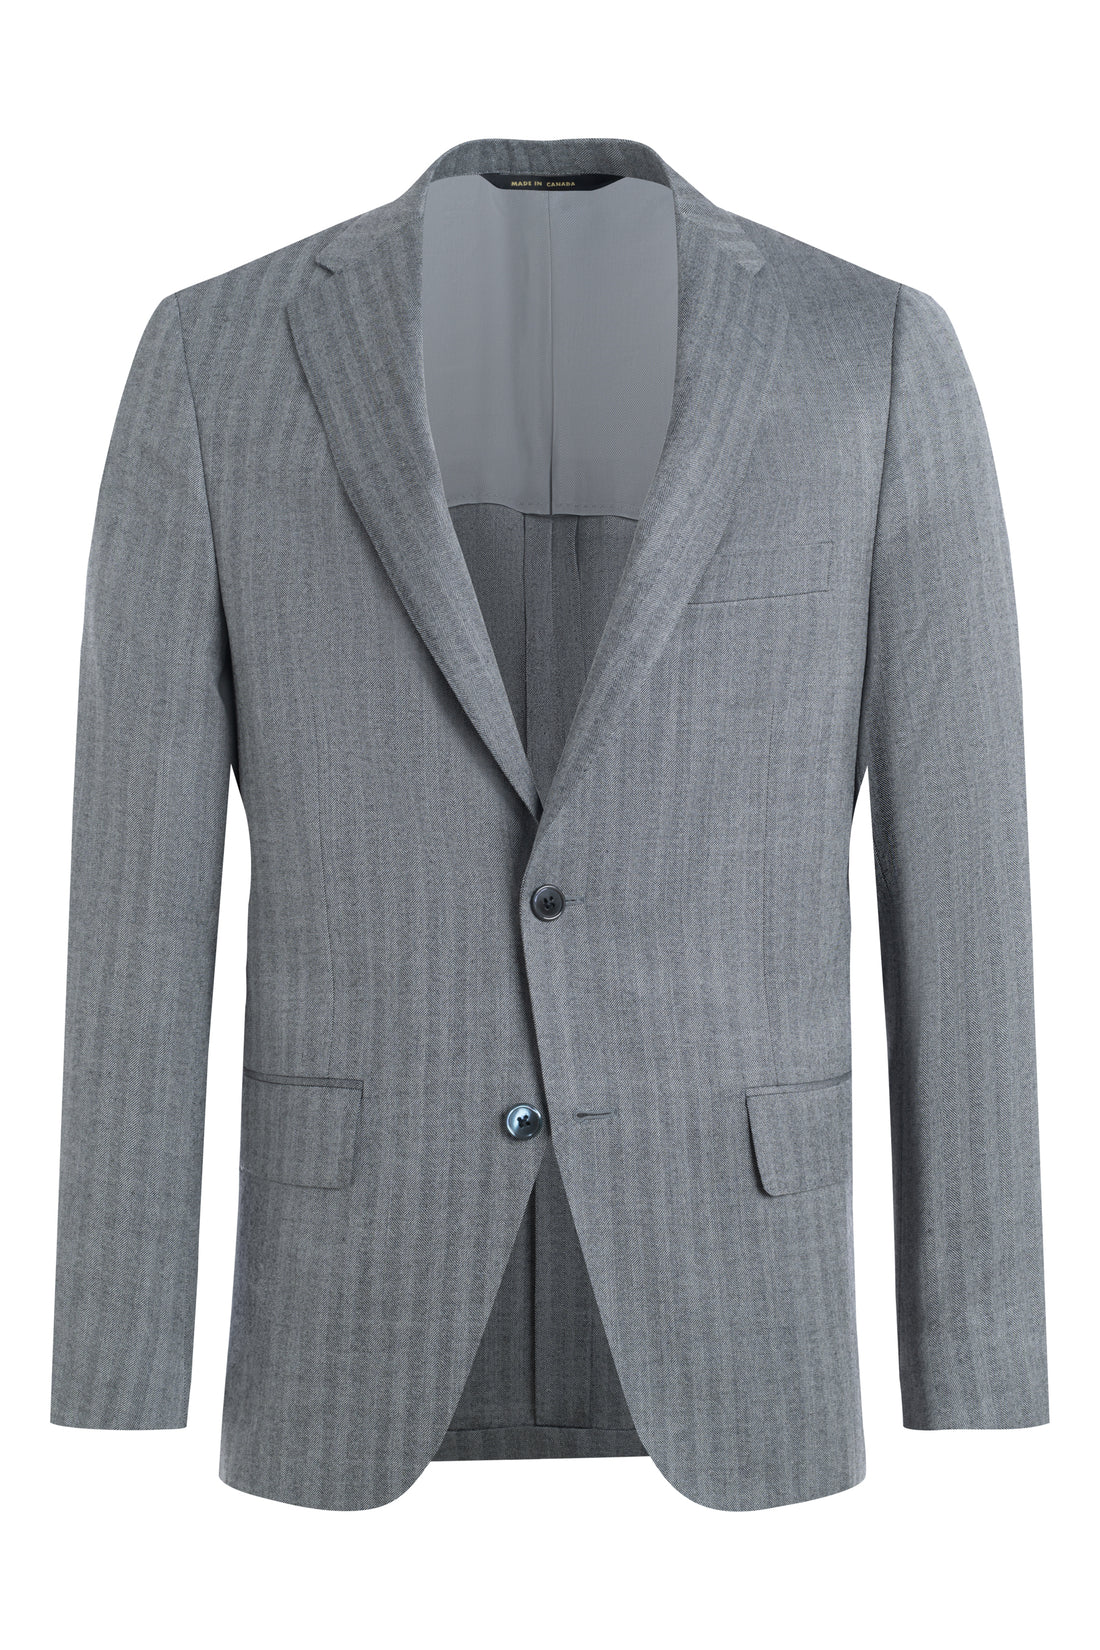 Steel Grey Herringbone Jacket